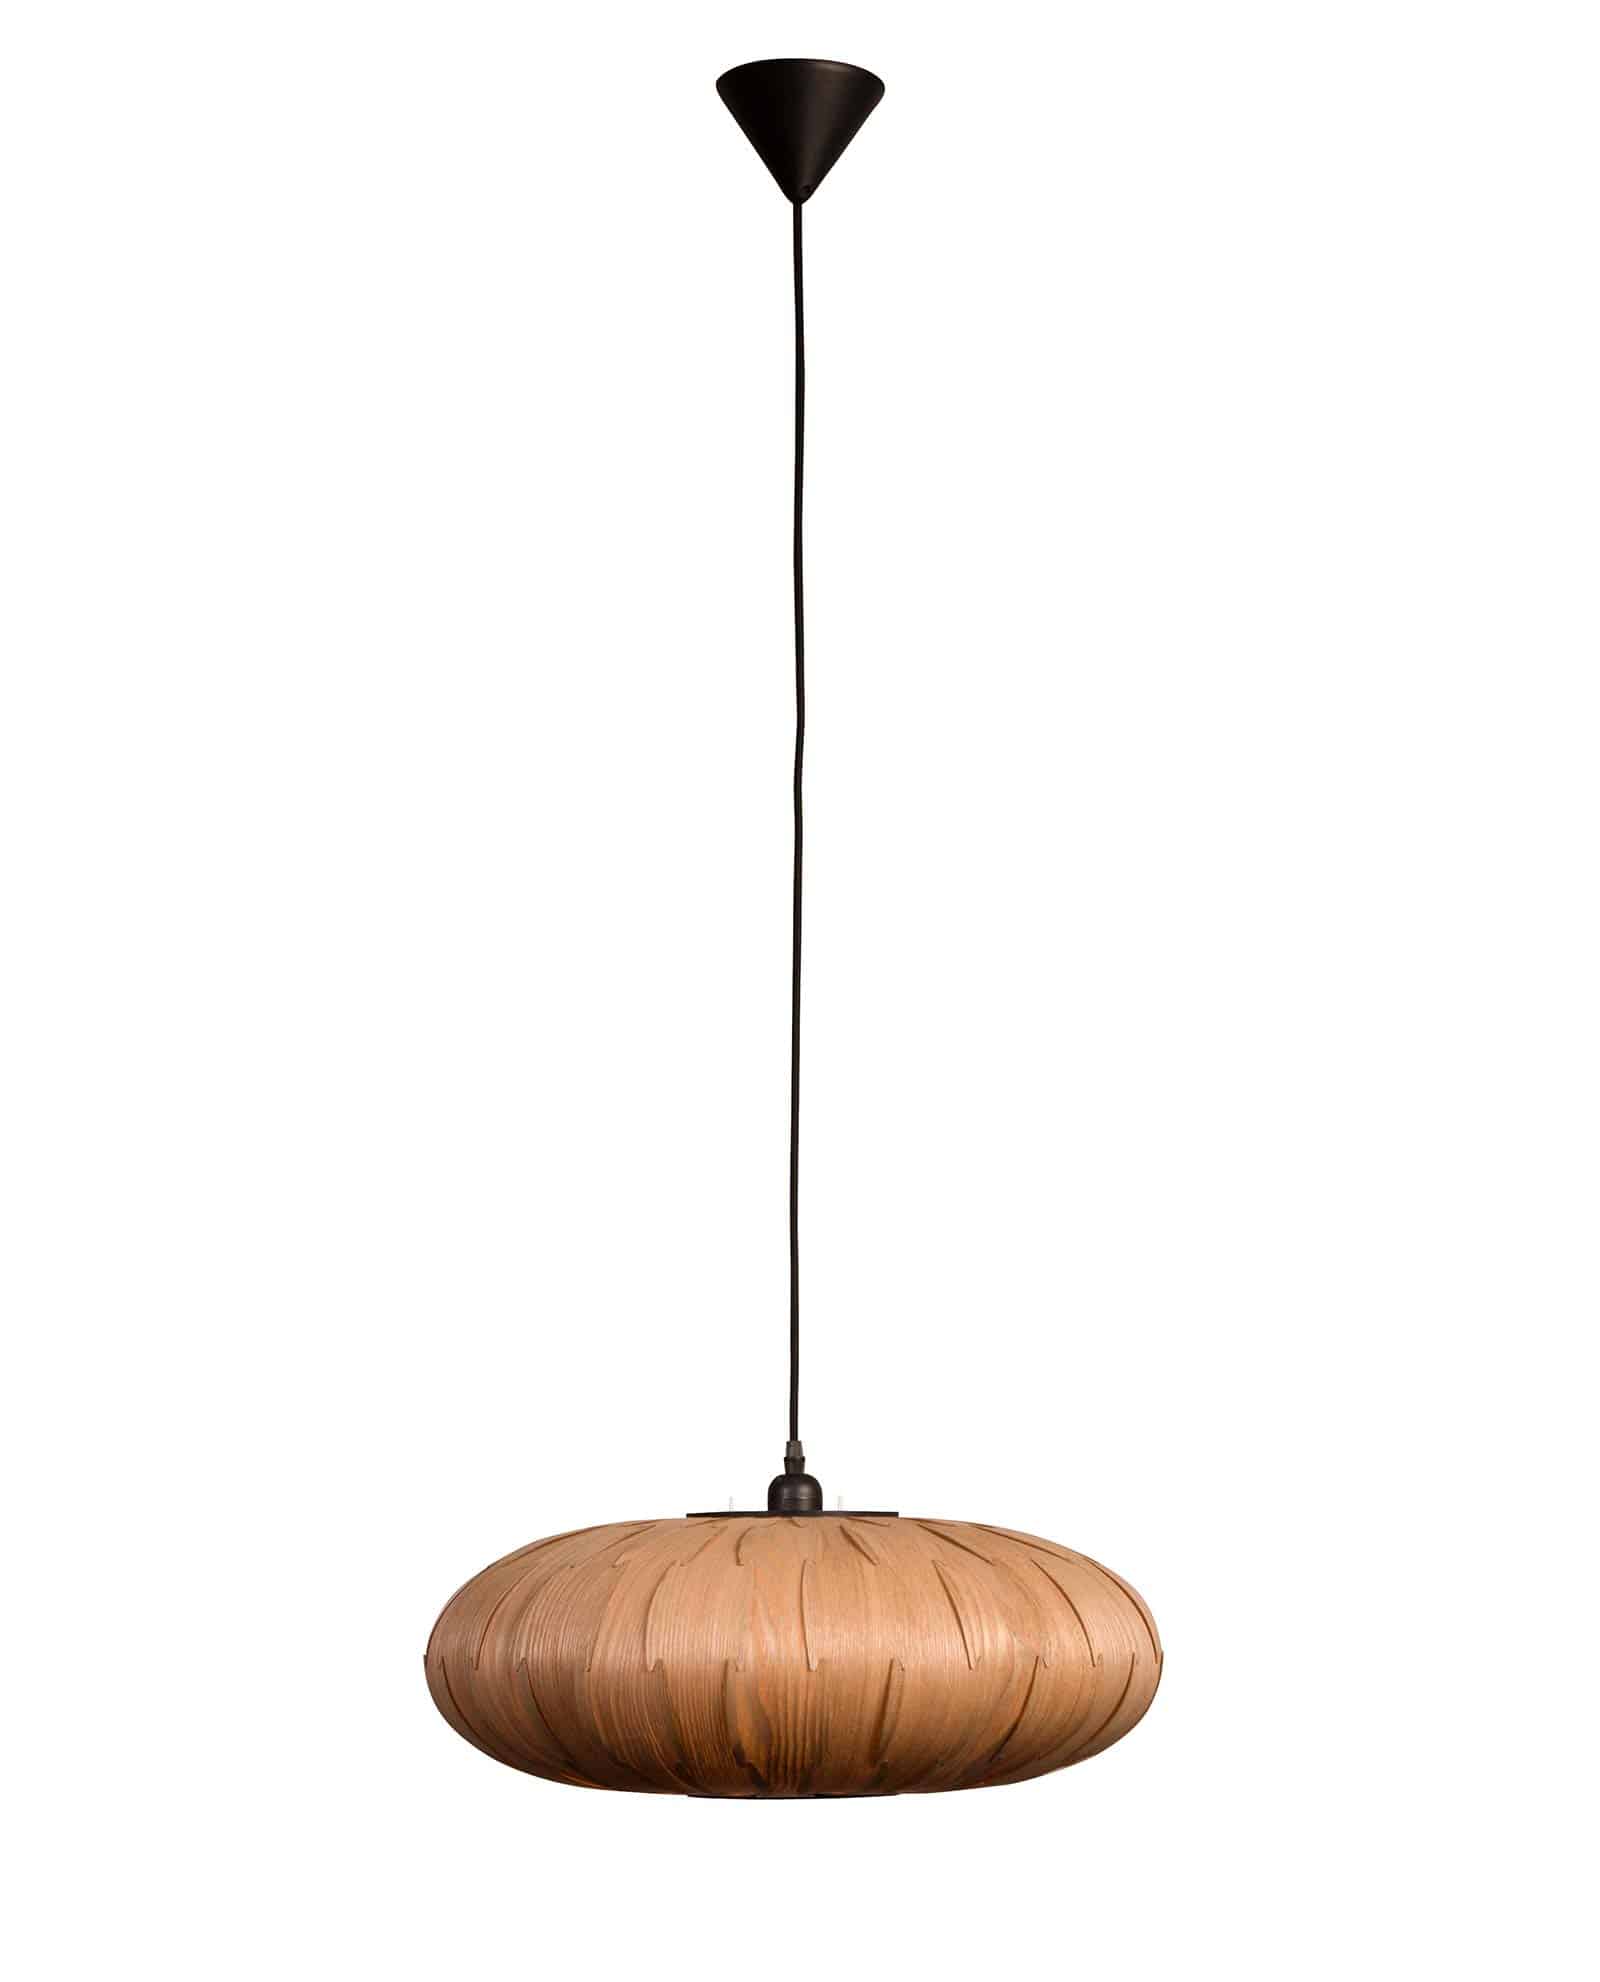 Kruis aan postzegel verachten Bond Oval hanglamp by Dutchbone - Designshopp